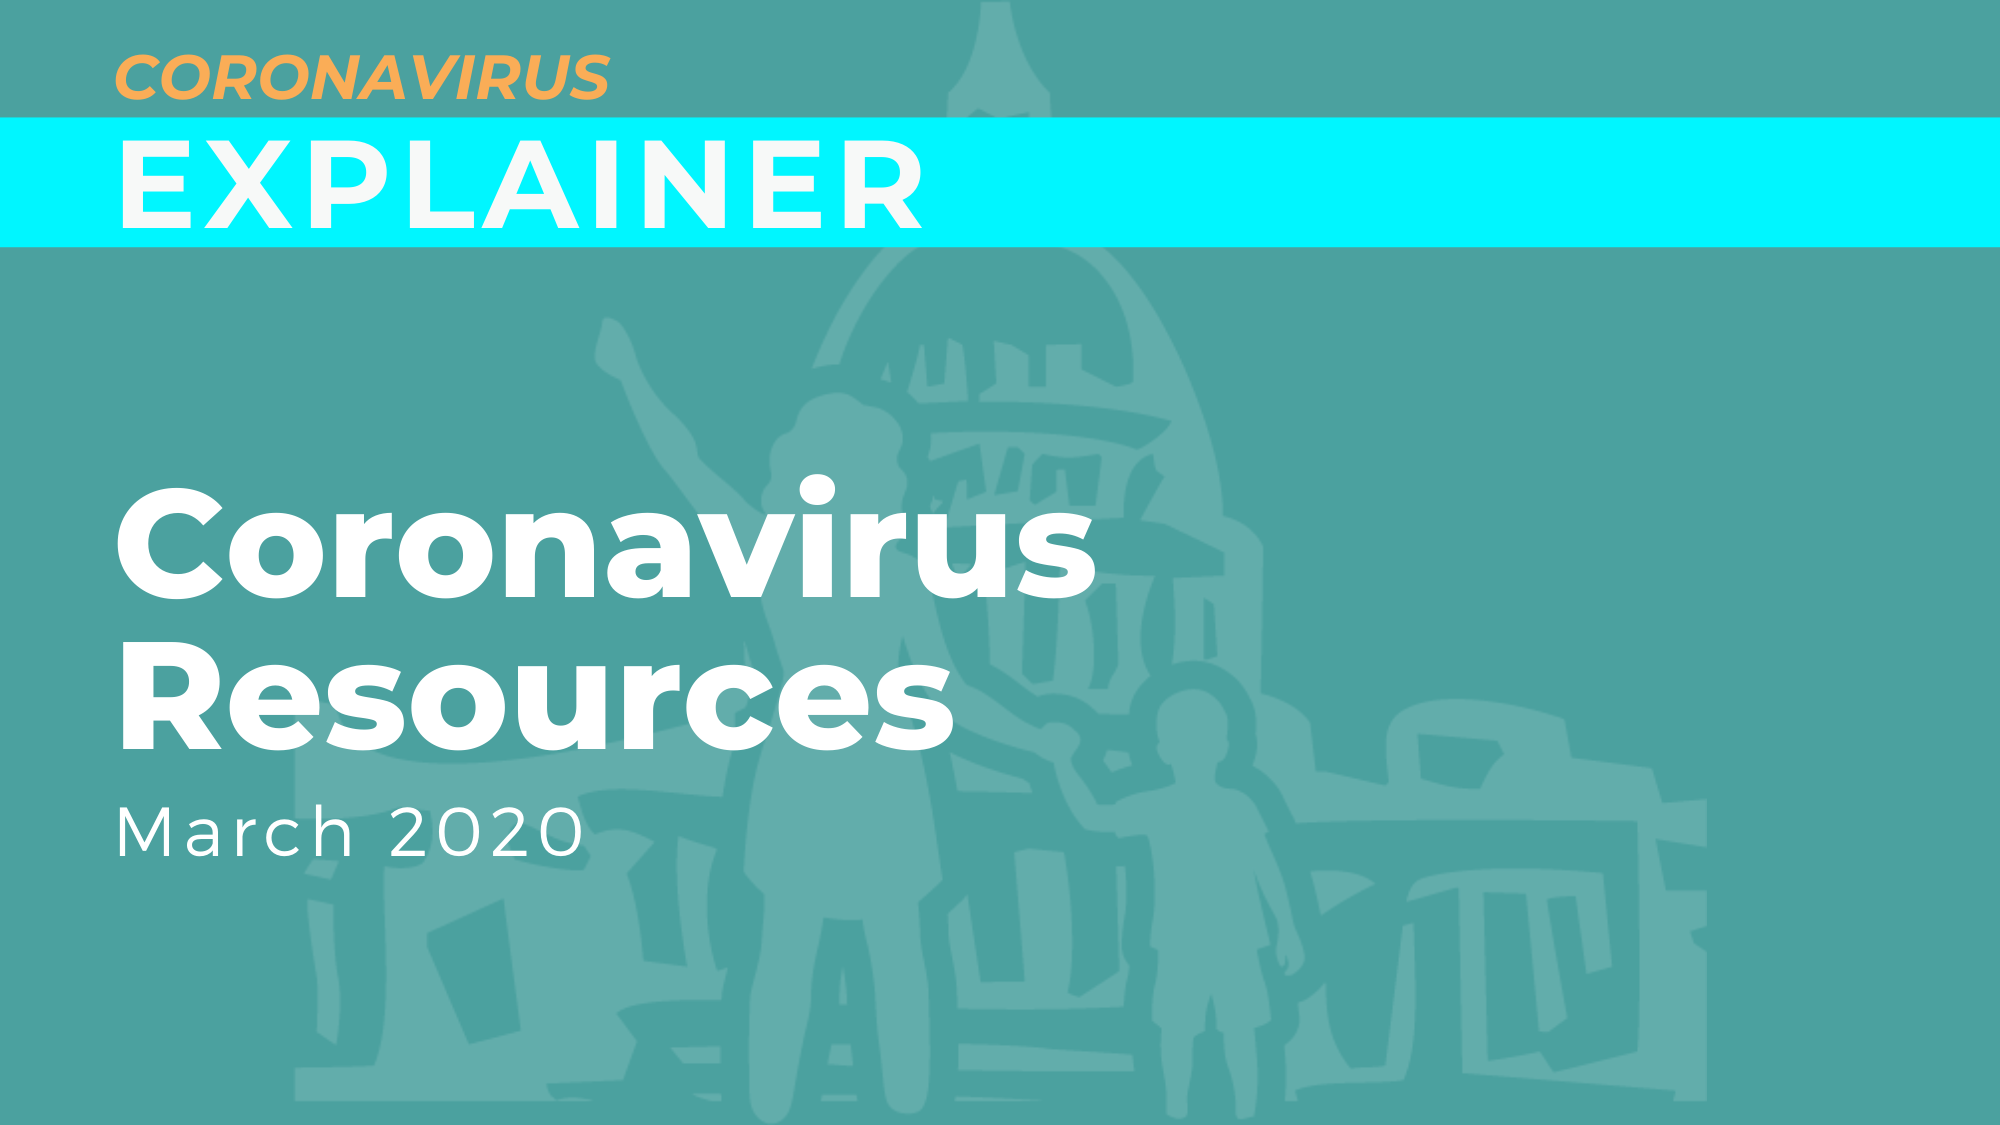 Coronavirus Resources